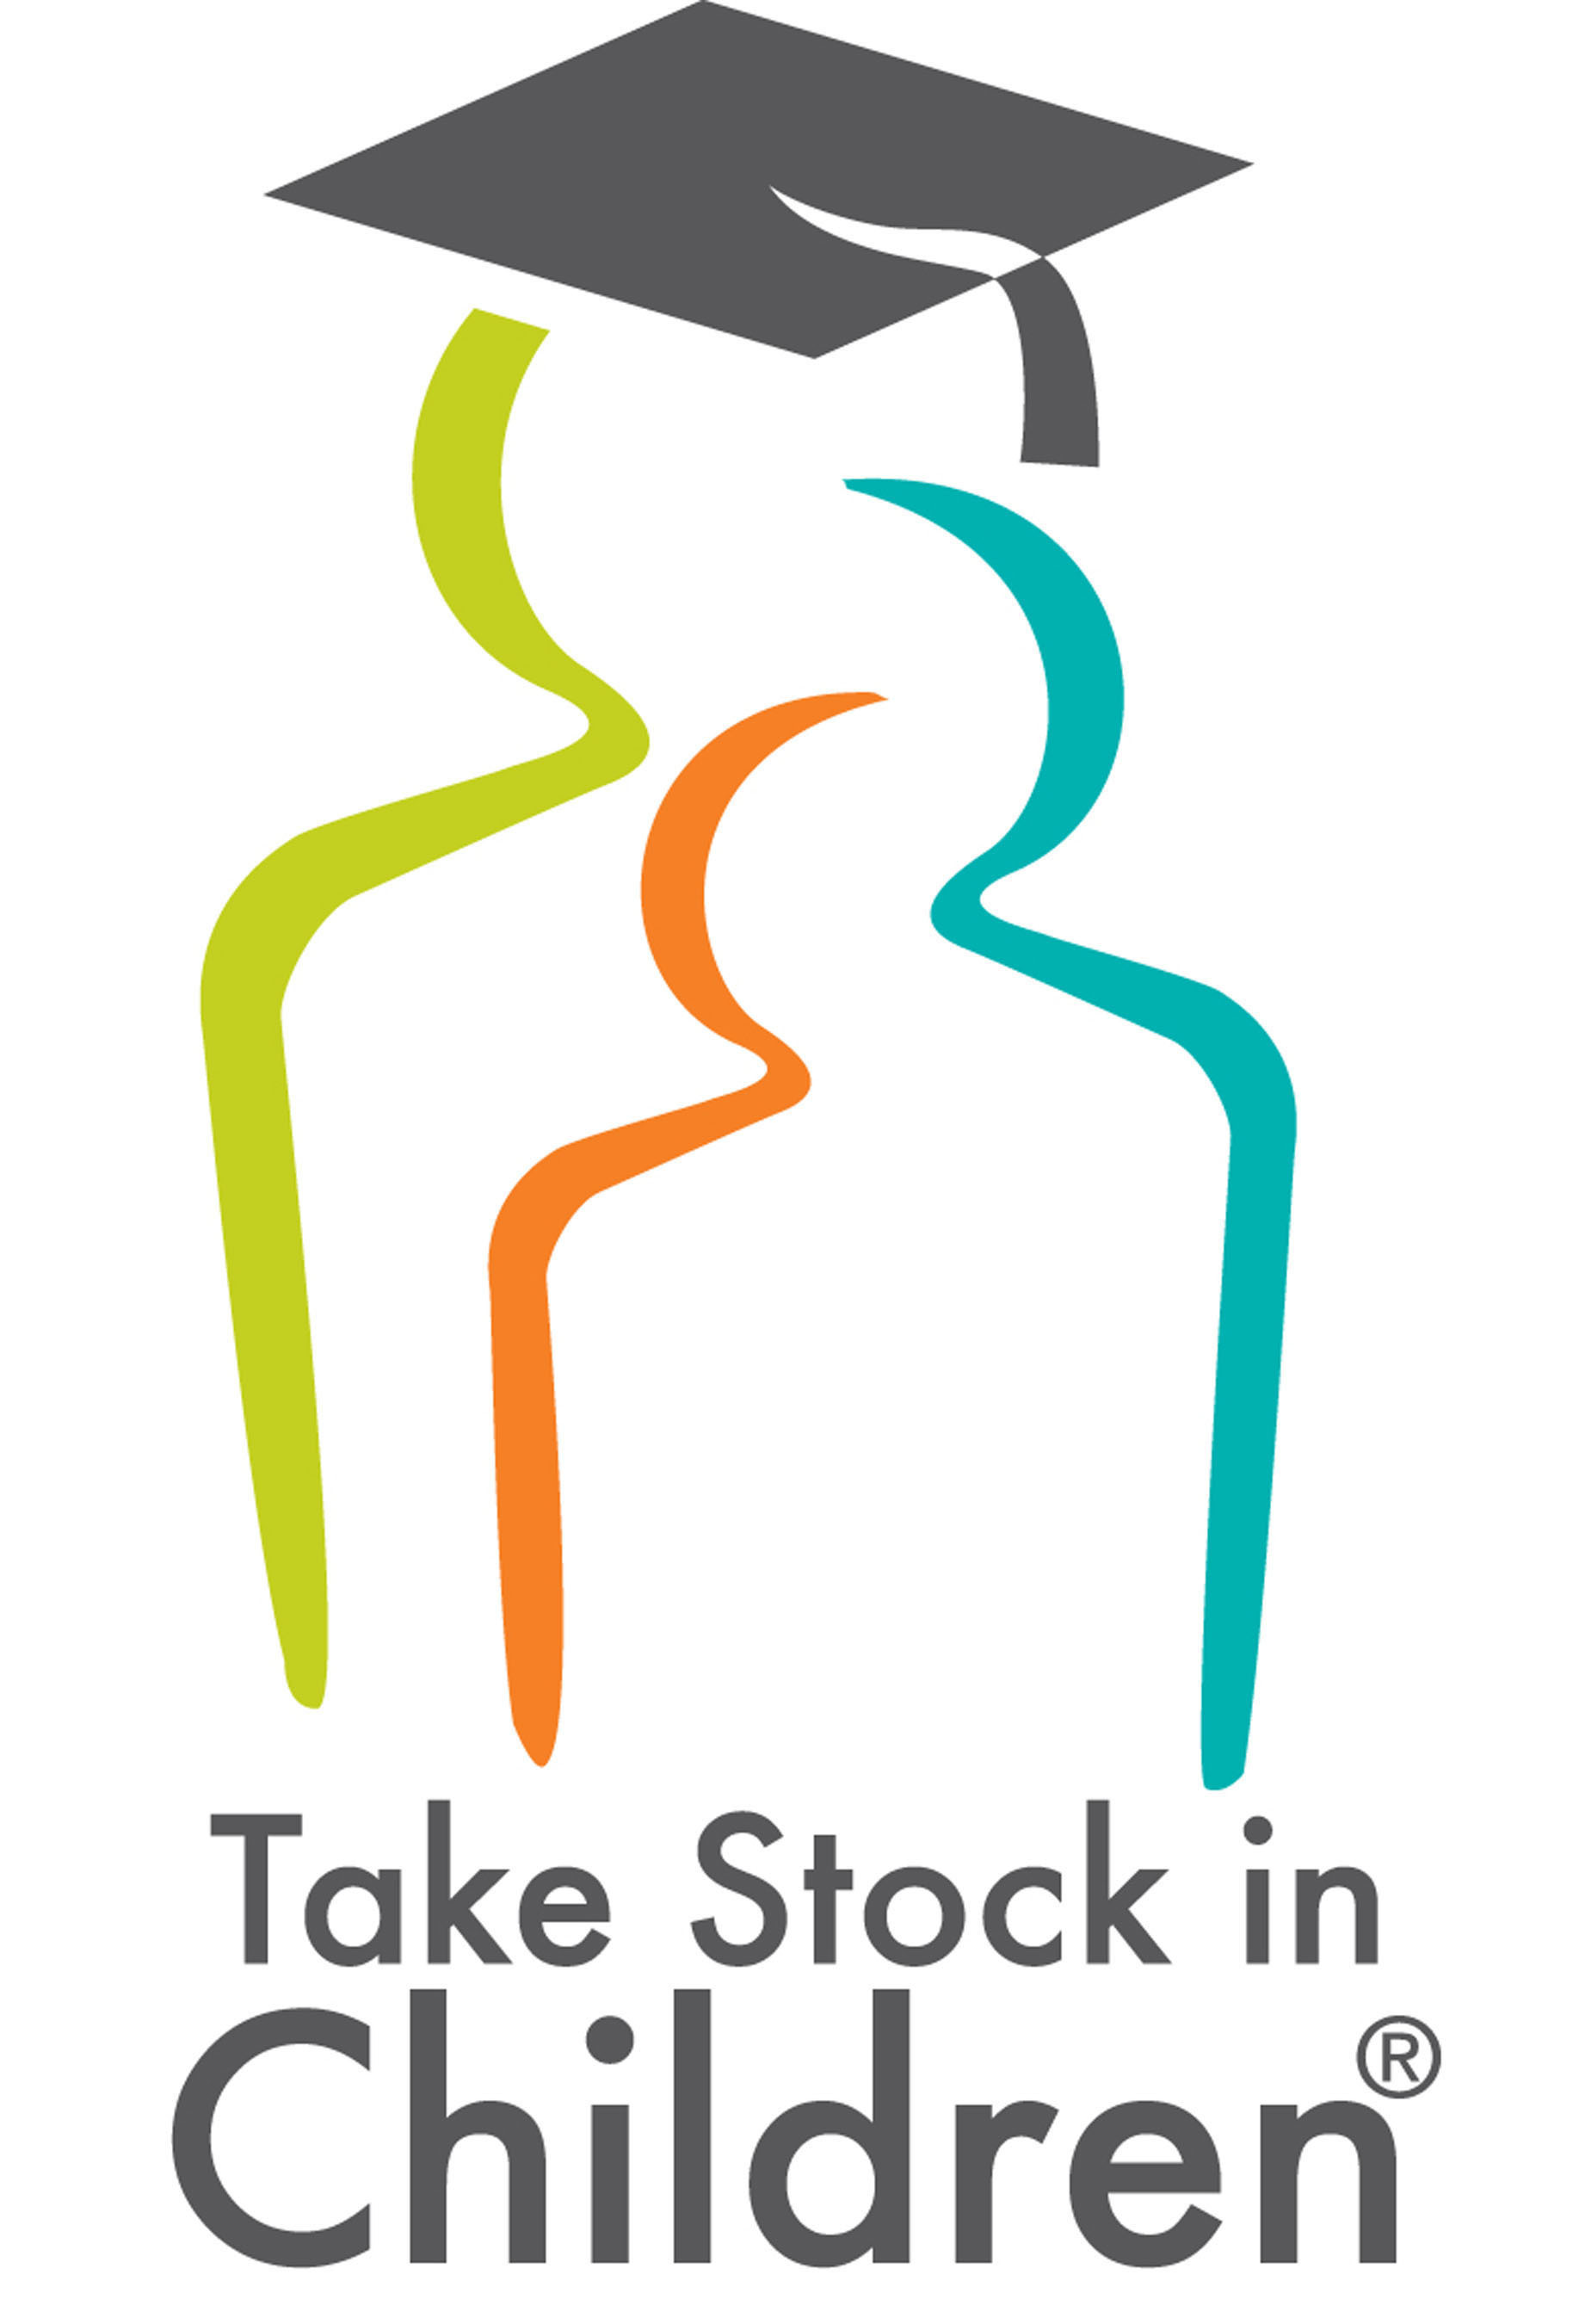 Take Stock in Children logo.